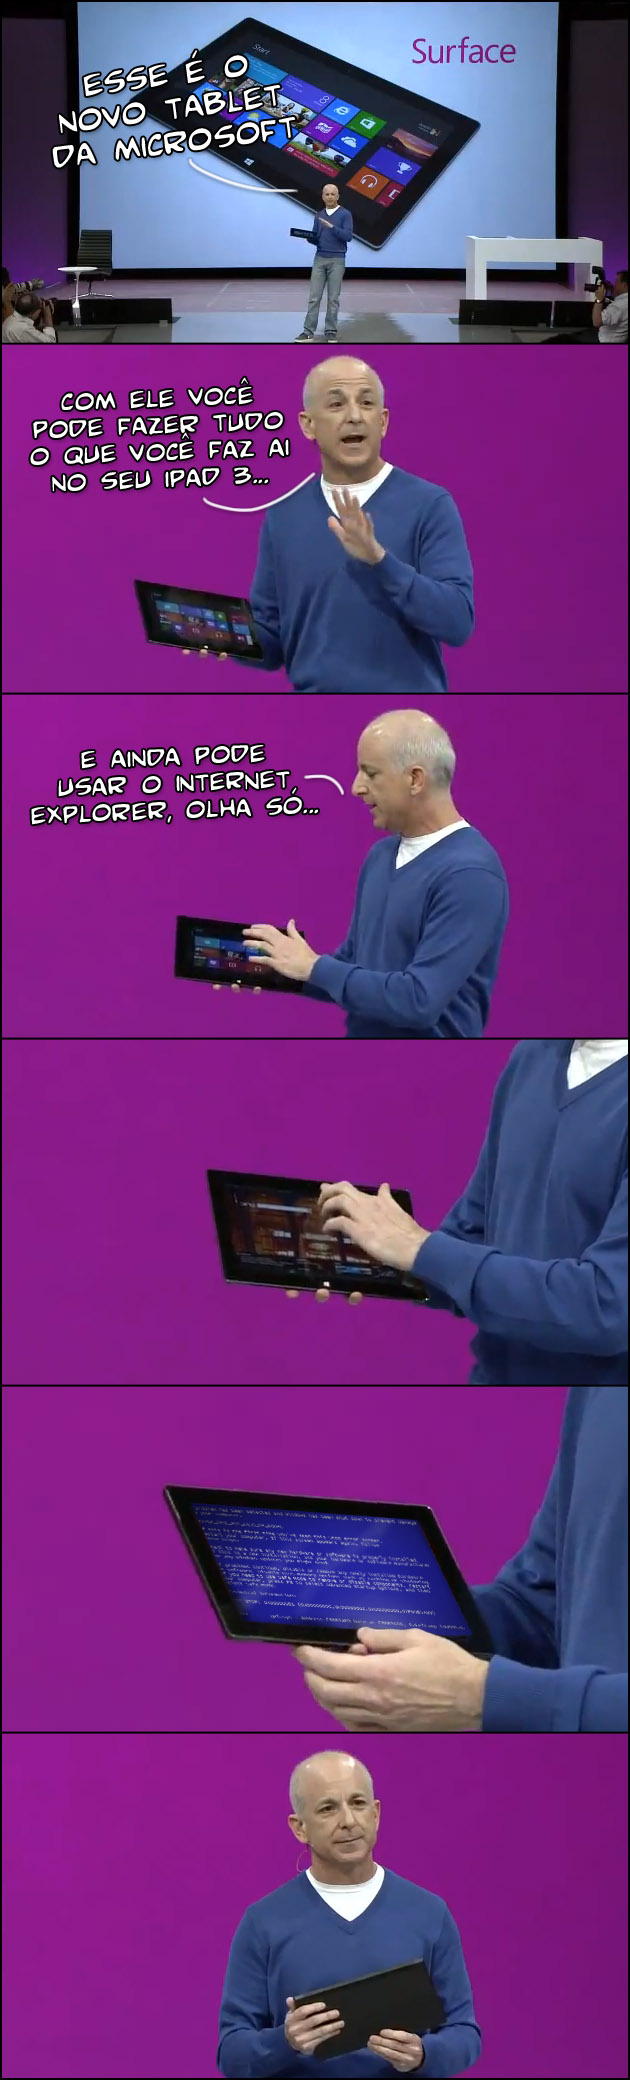 SURFACE Microsoft lança tablet Surface